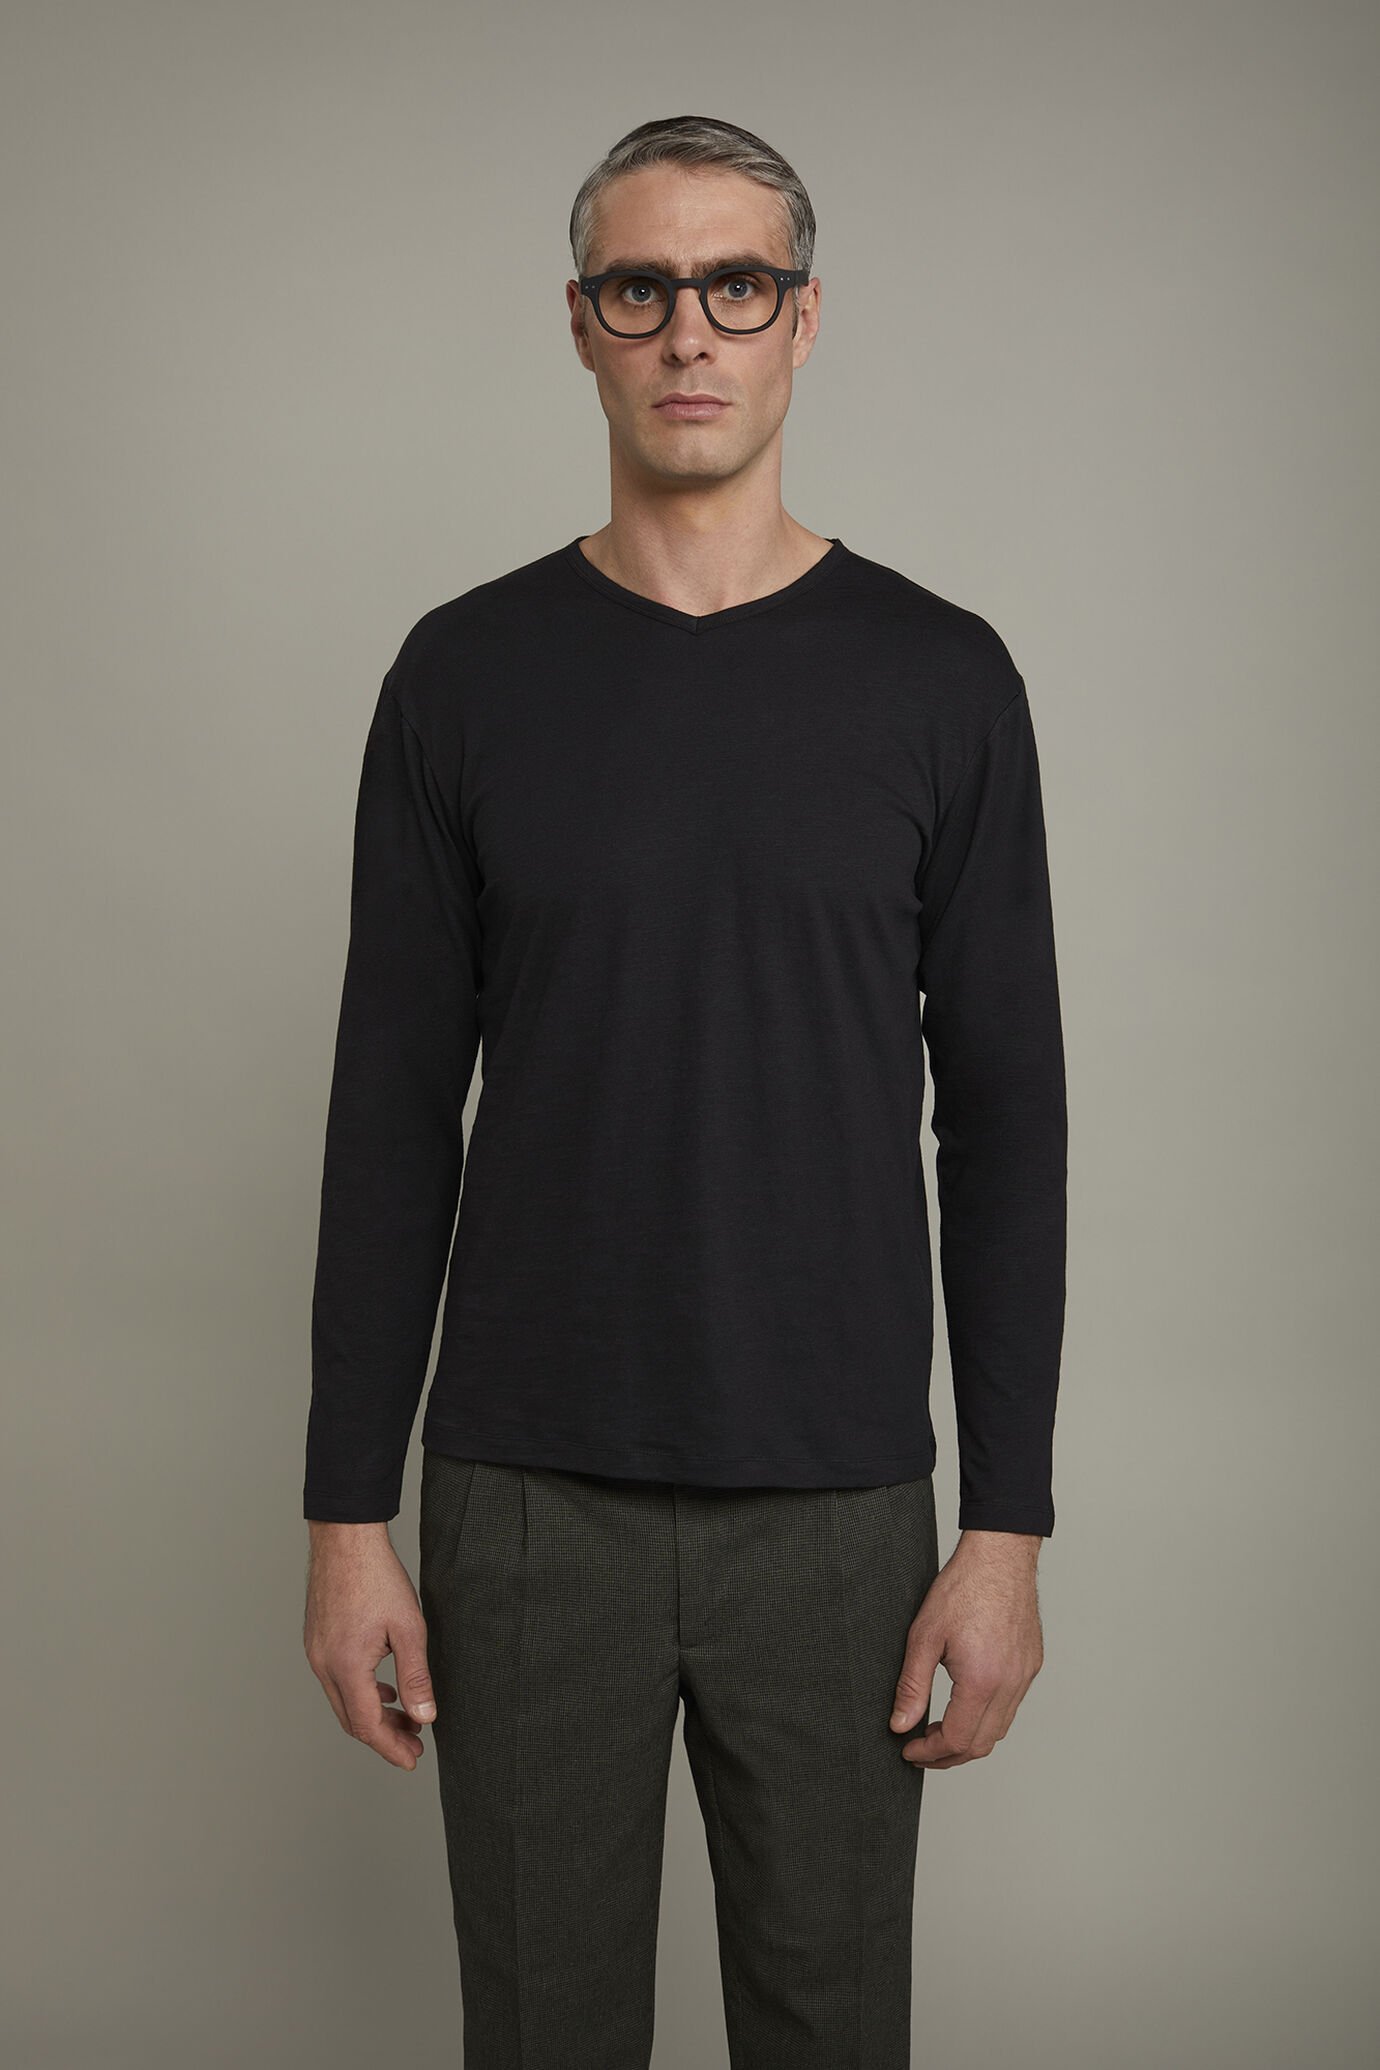 Herren-T-Shirt mit V-Ausschnitt und langen Ärmeln aus 100 % Slub-Baumwolle in normaler Passform